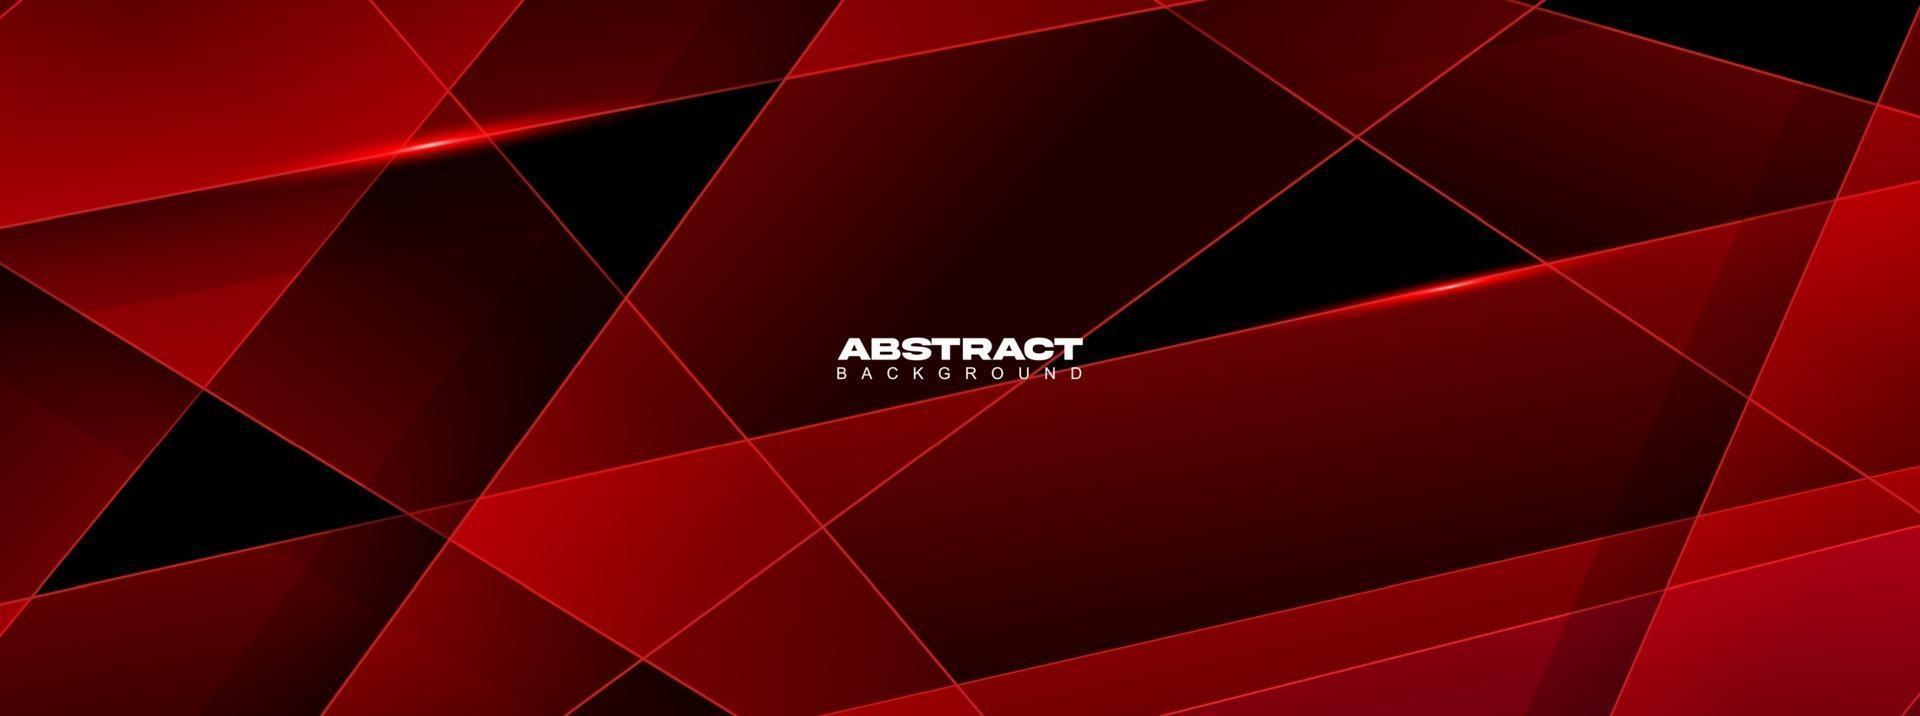 moderne abstracte geometrische rode en zwarte kleurenachtergrond. beweging, sport, lijnen. poster, behang, bestemmingspagina. vector illustratie